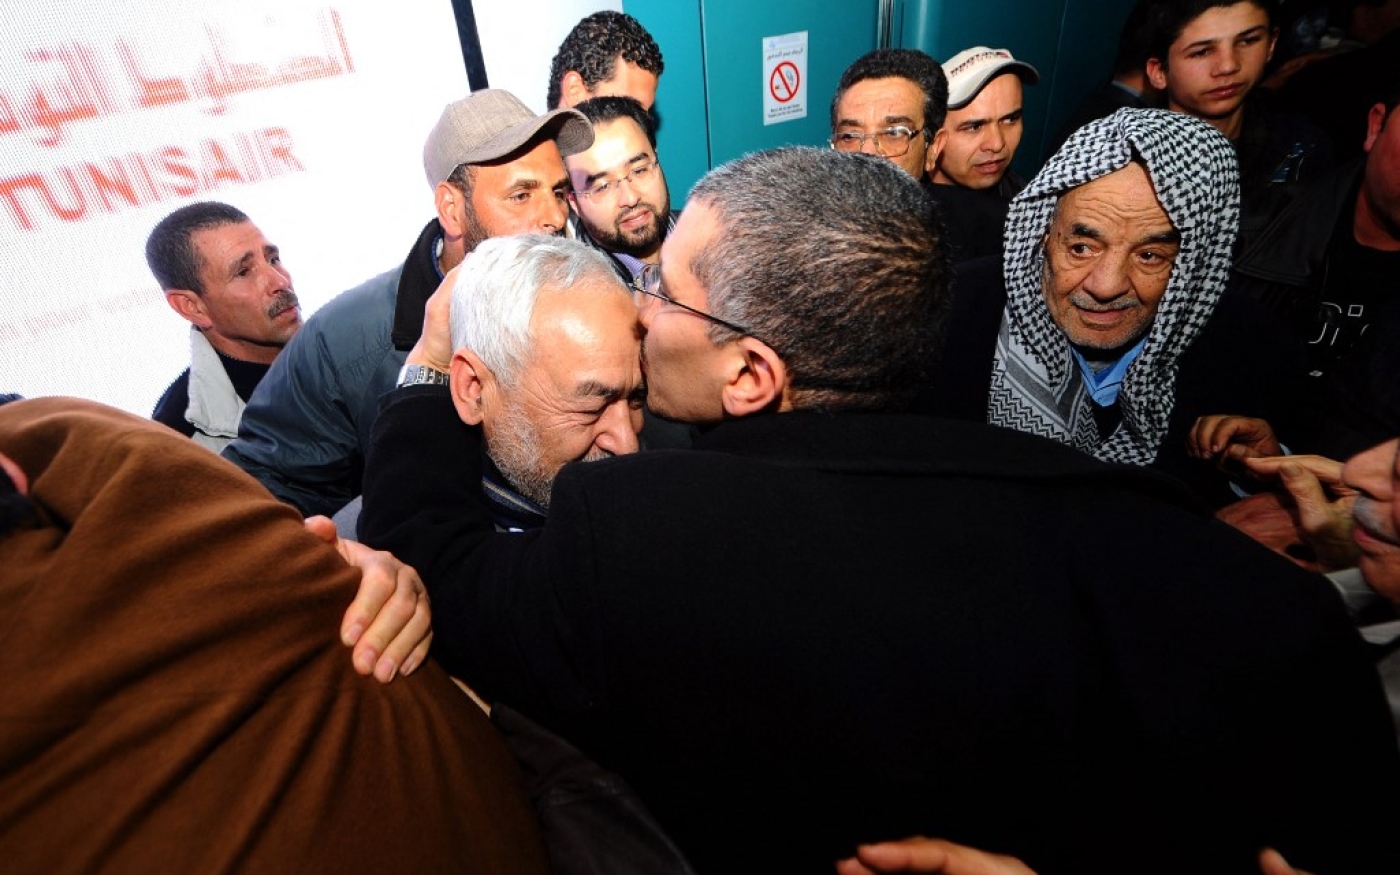 Rached Ghannouchi est accueilli par ses partisans à son retour d’exil, à l’aéroport de Tunis, le 11 février 2011 (AFP/Fethi Belaïd)